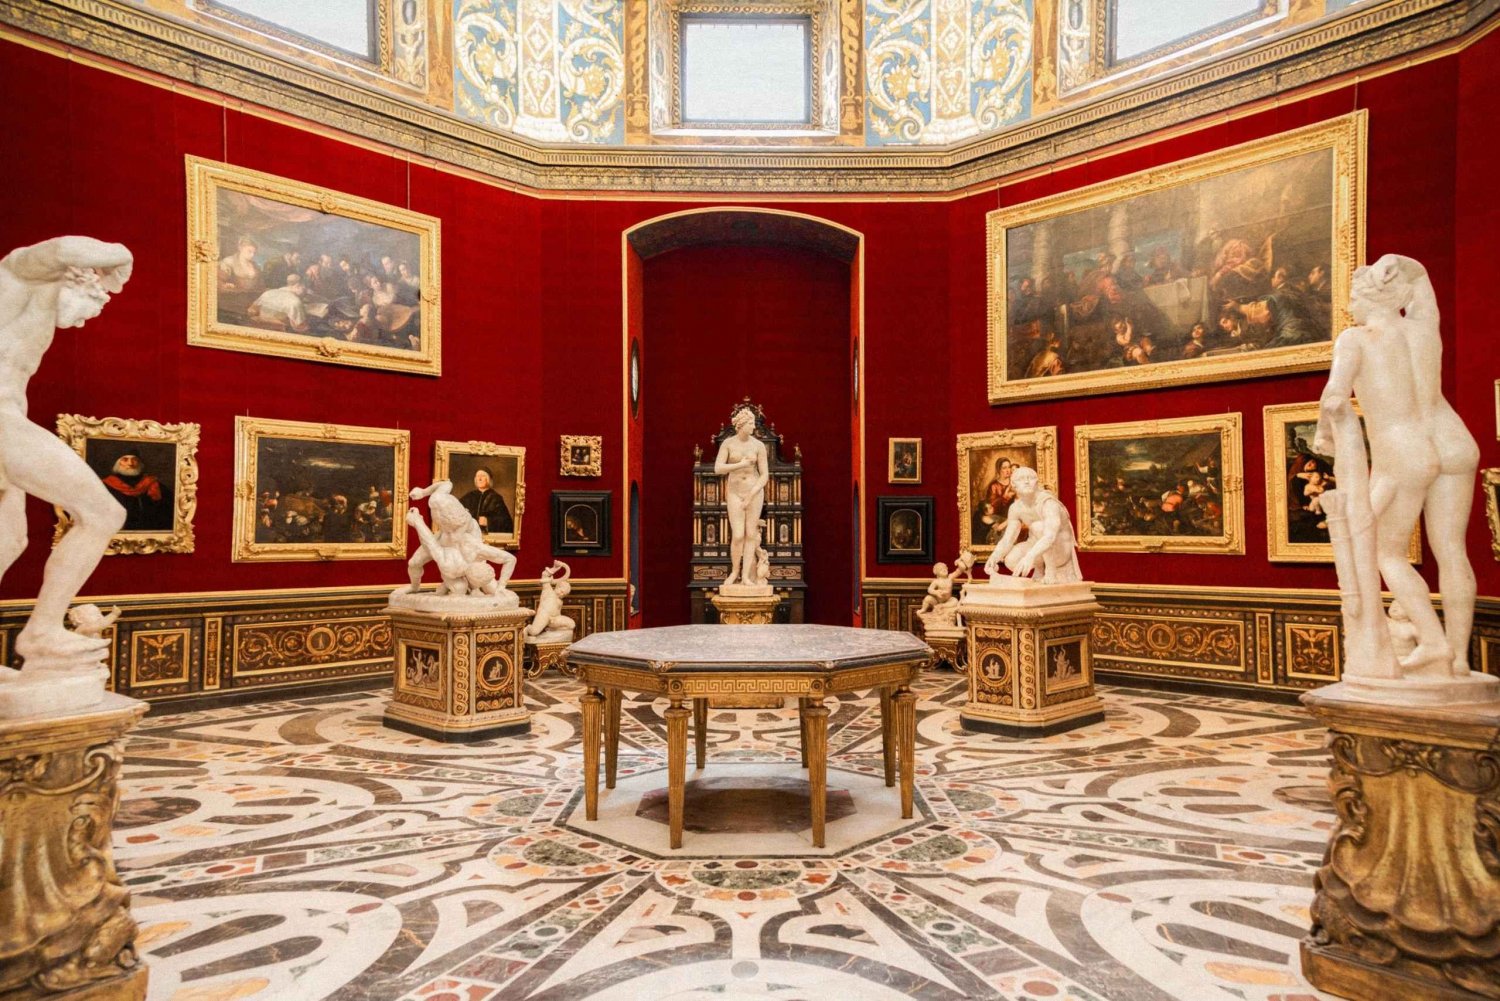 Florencia: Galería de los Uffizi ticket de entrada sin colas